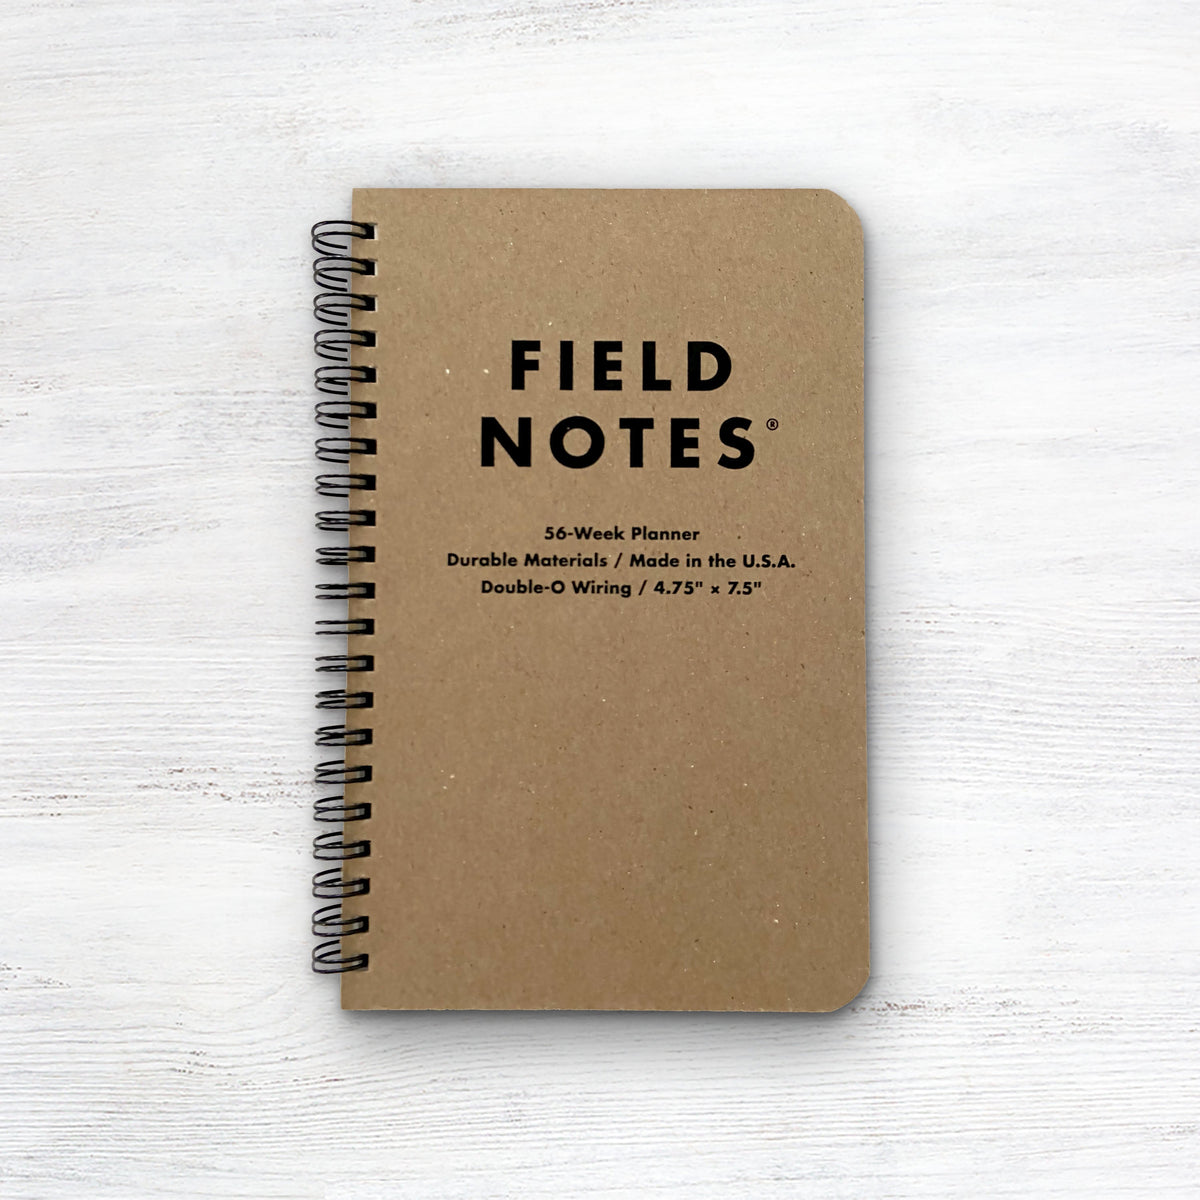 Field Notes 56-Week Planner